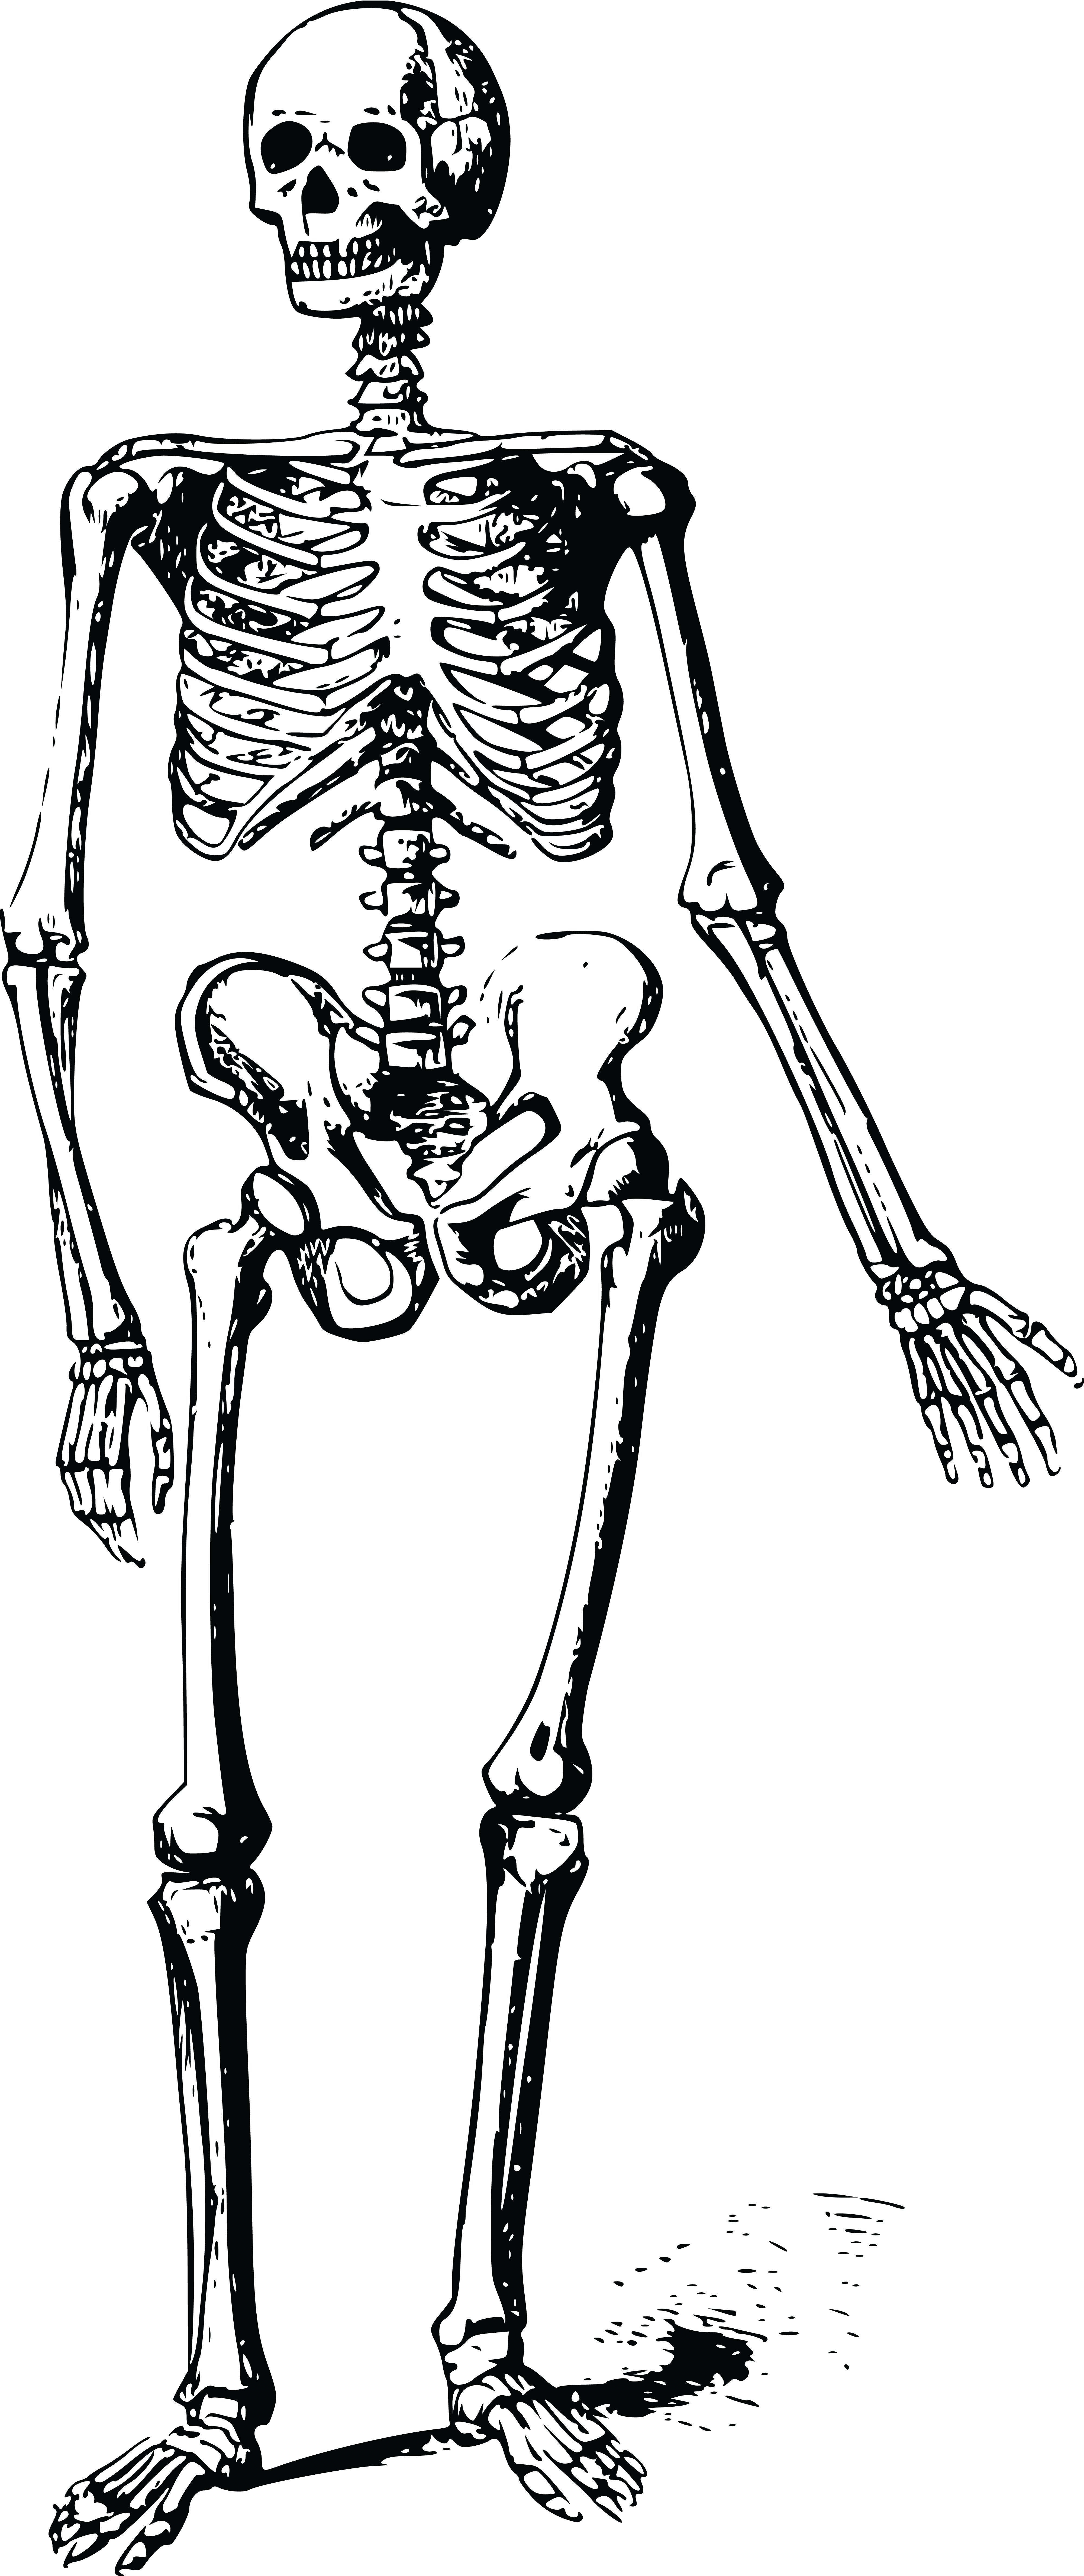 Body Skeleton PNG Free File Download